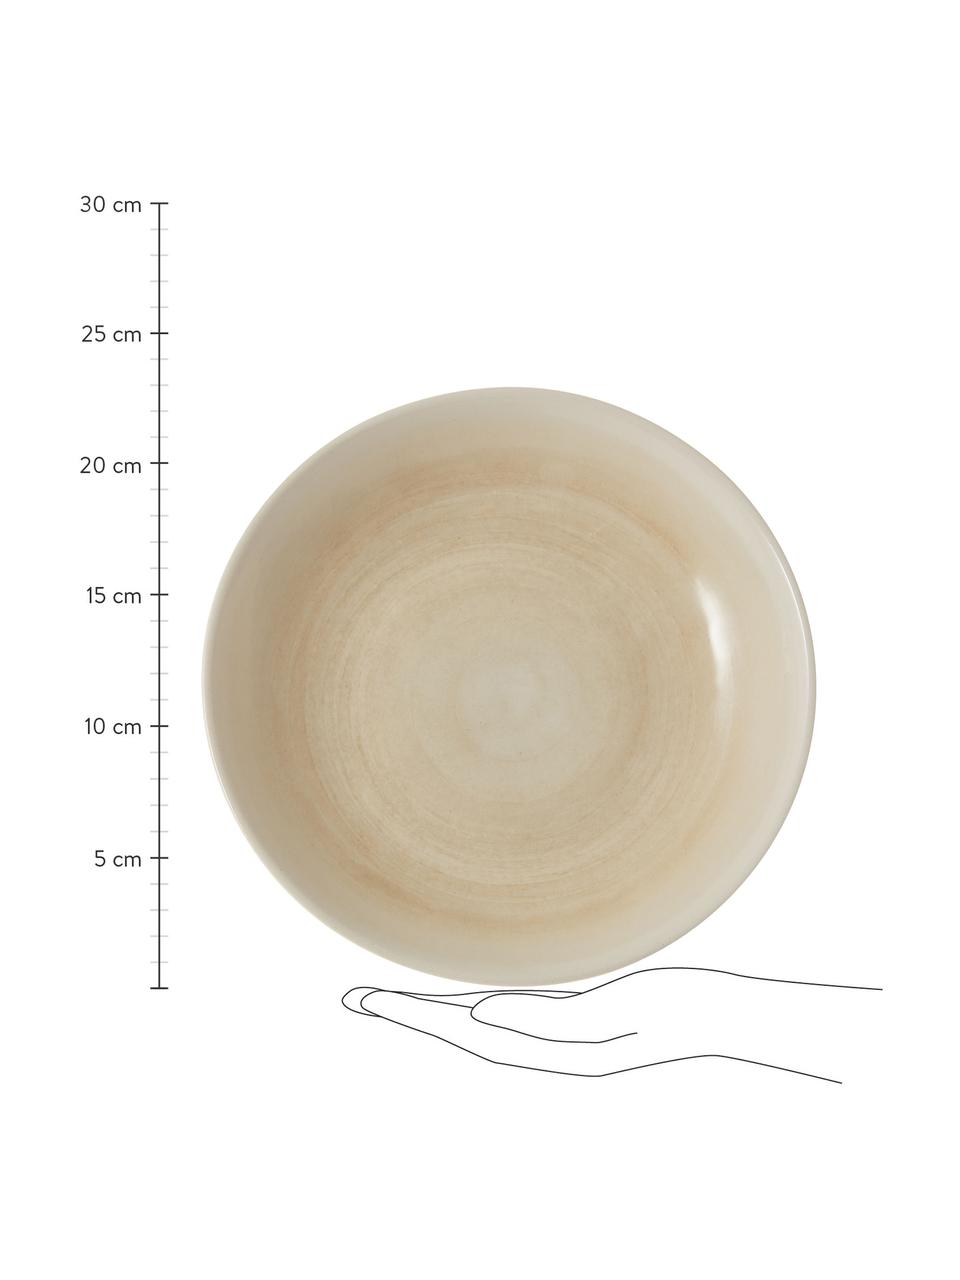 Ręcznie wykonany talerz głęboki Pure, 6 szt., Ceramika, Beżowy, biały, Ø 21 cm